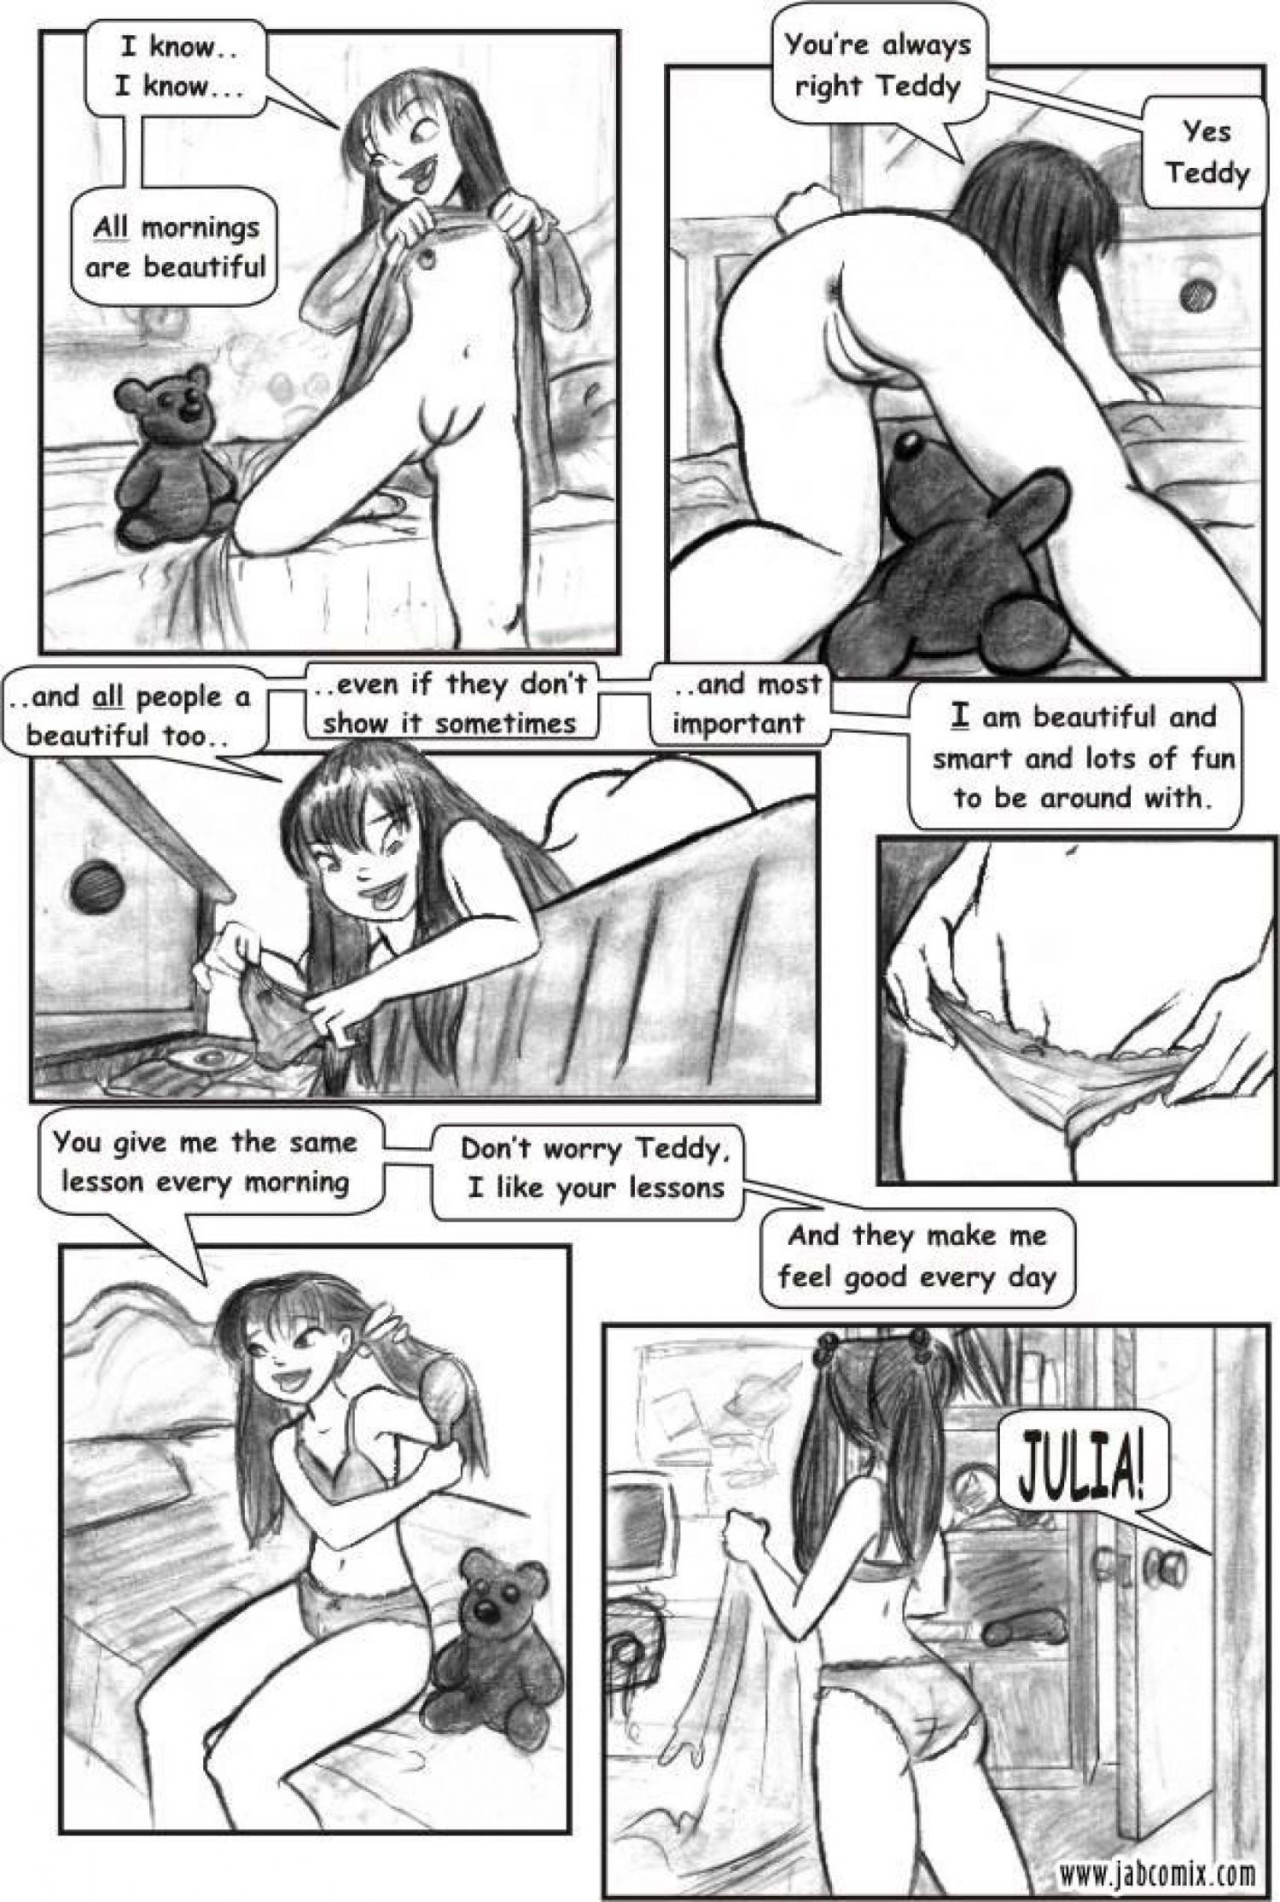 Ay Papi Part 1: Tempt Me Not Porn Comic english 03